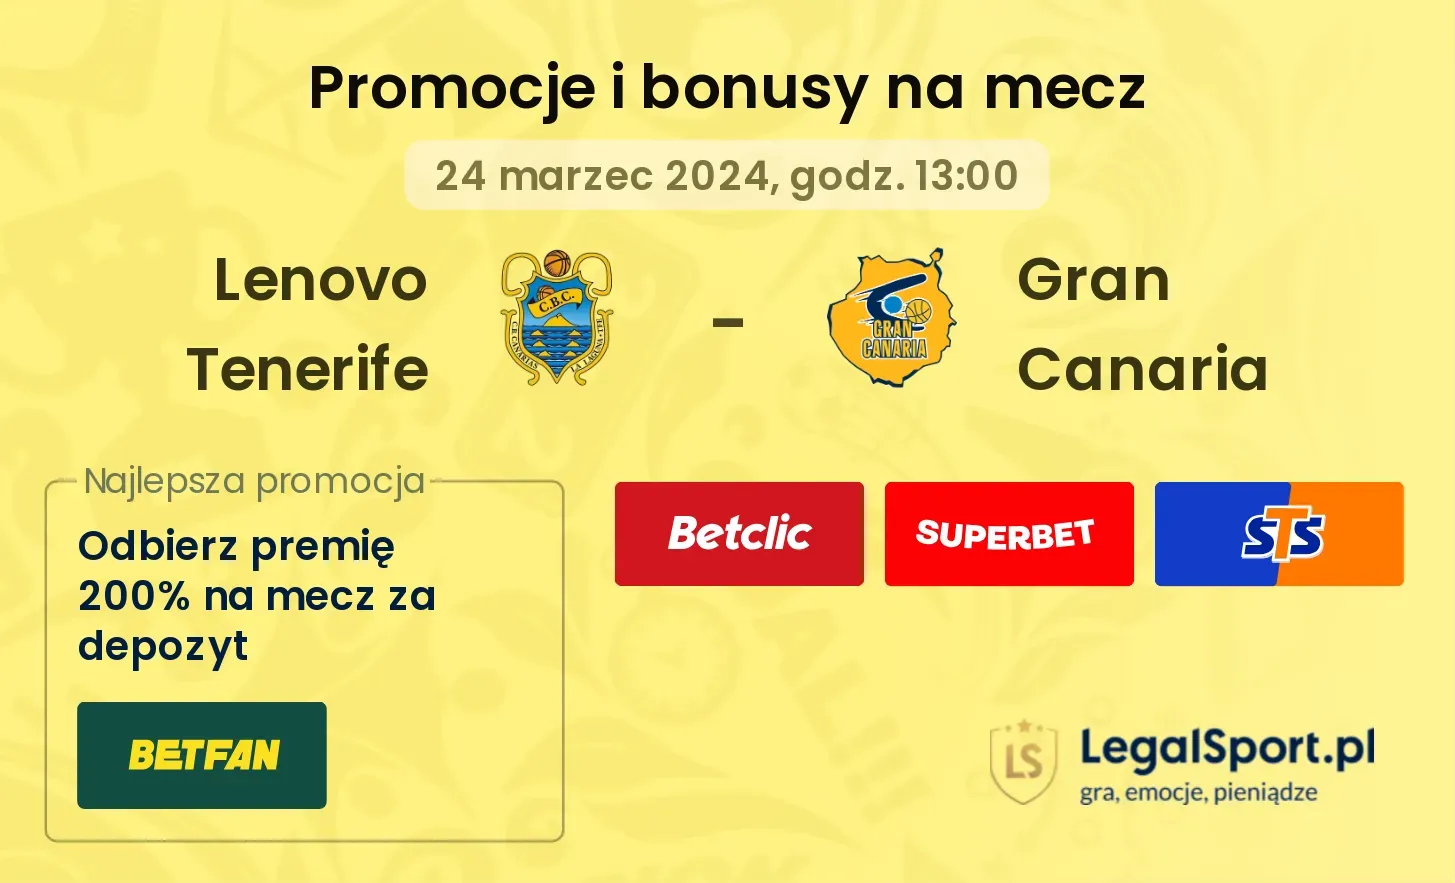 Lenovo Tenerife - Gran Canaria promocje bonusy na mecz